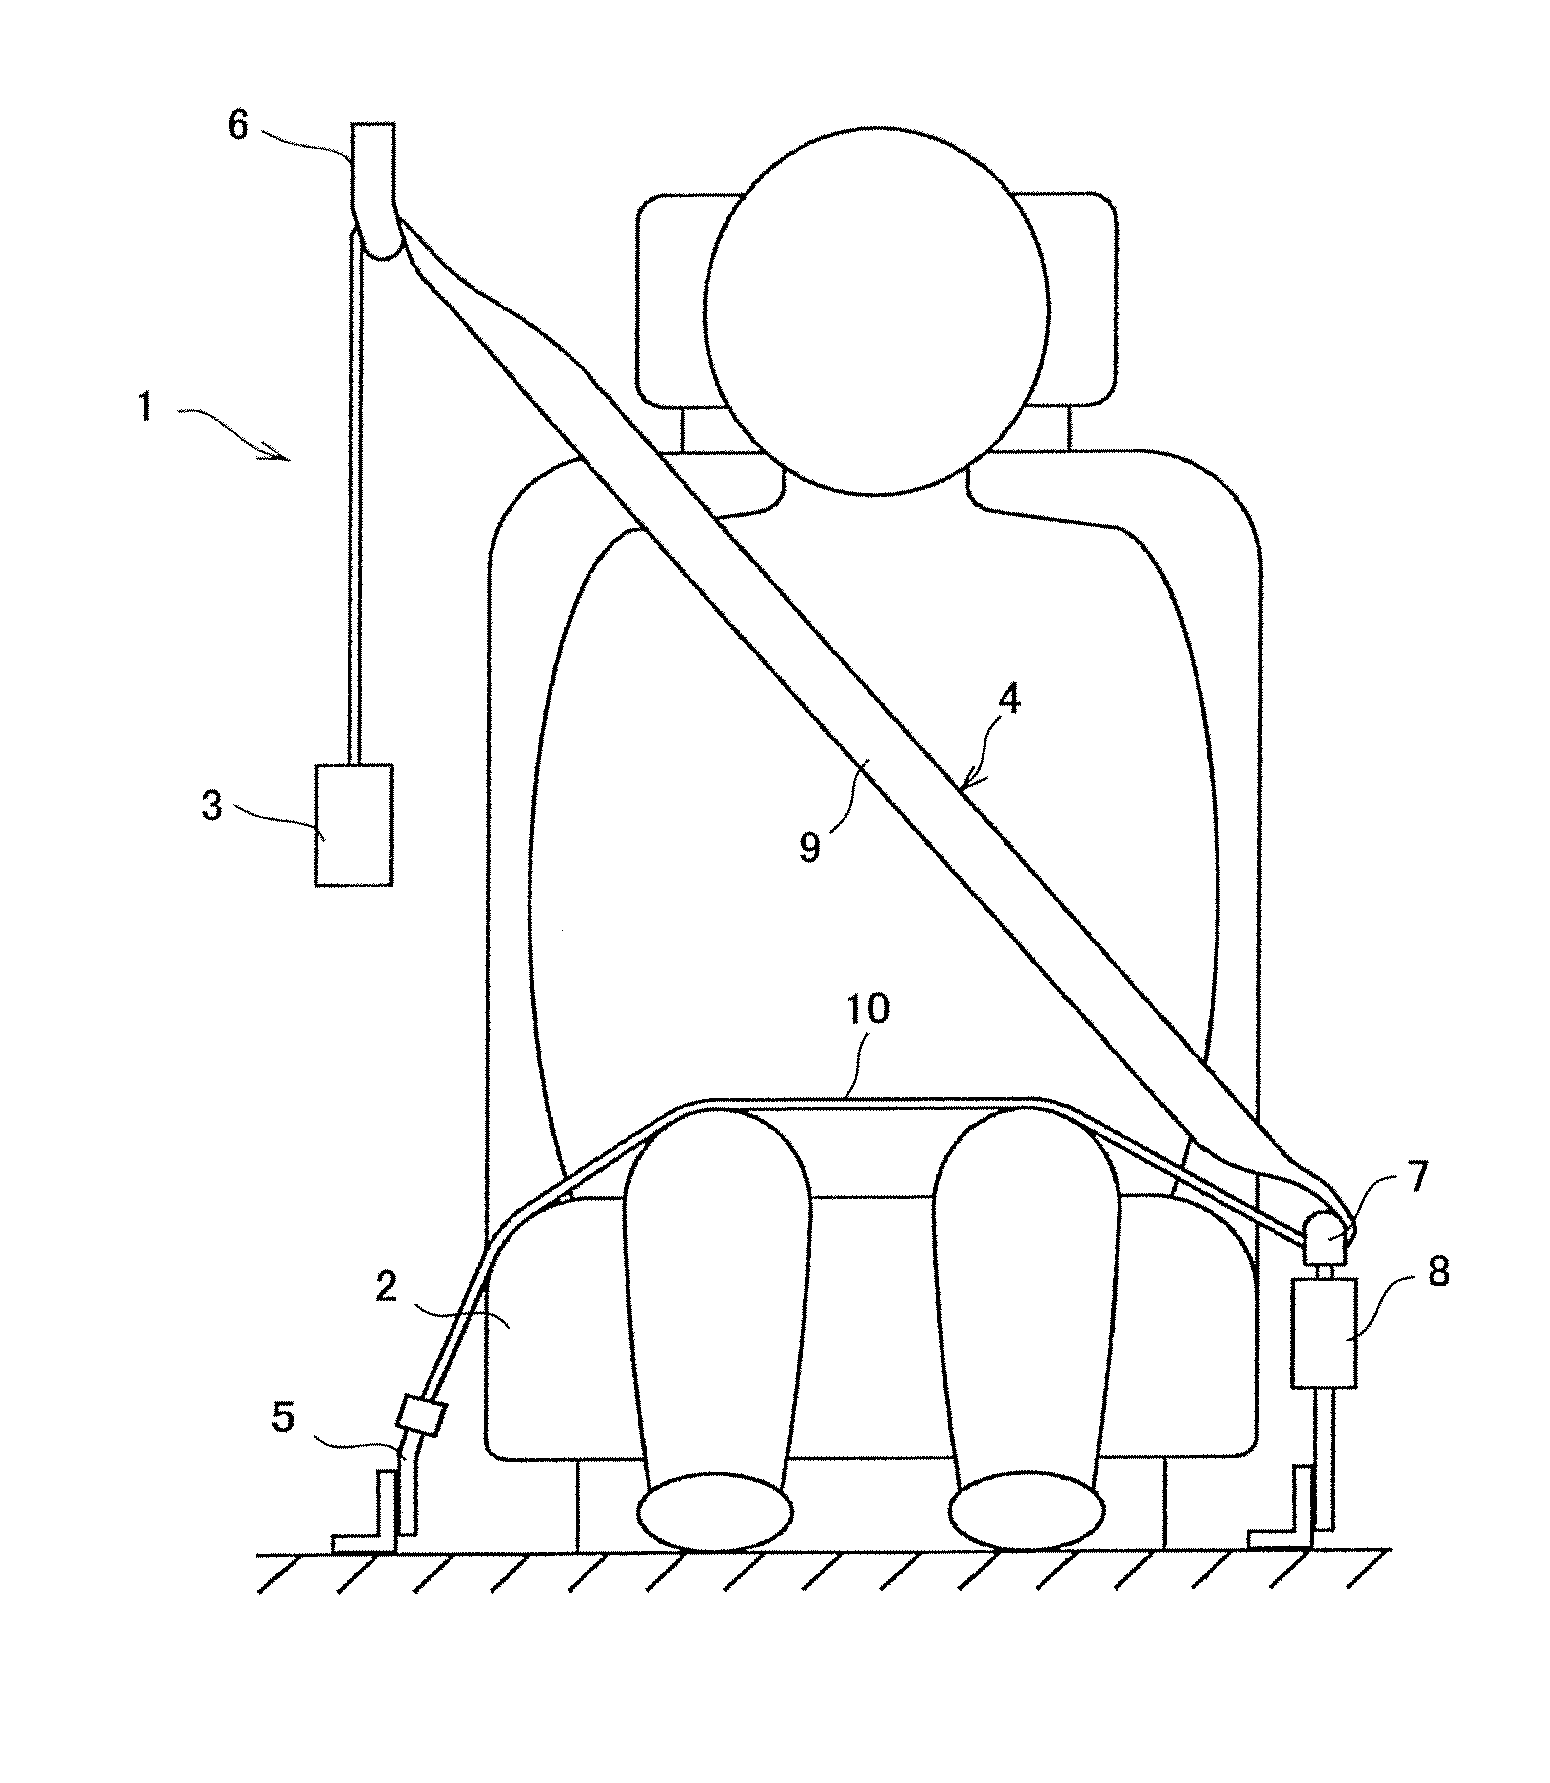 Tongue and seat belt apparatus using tongue